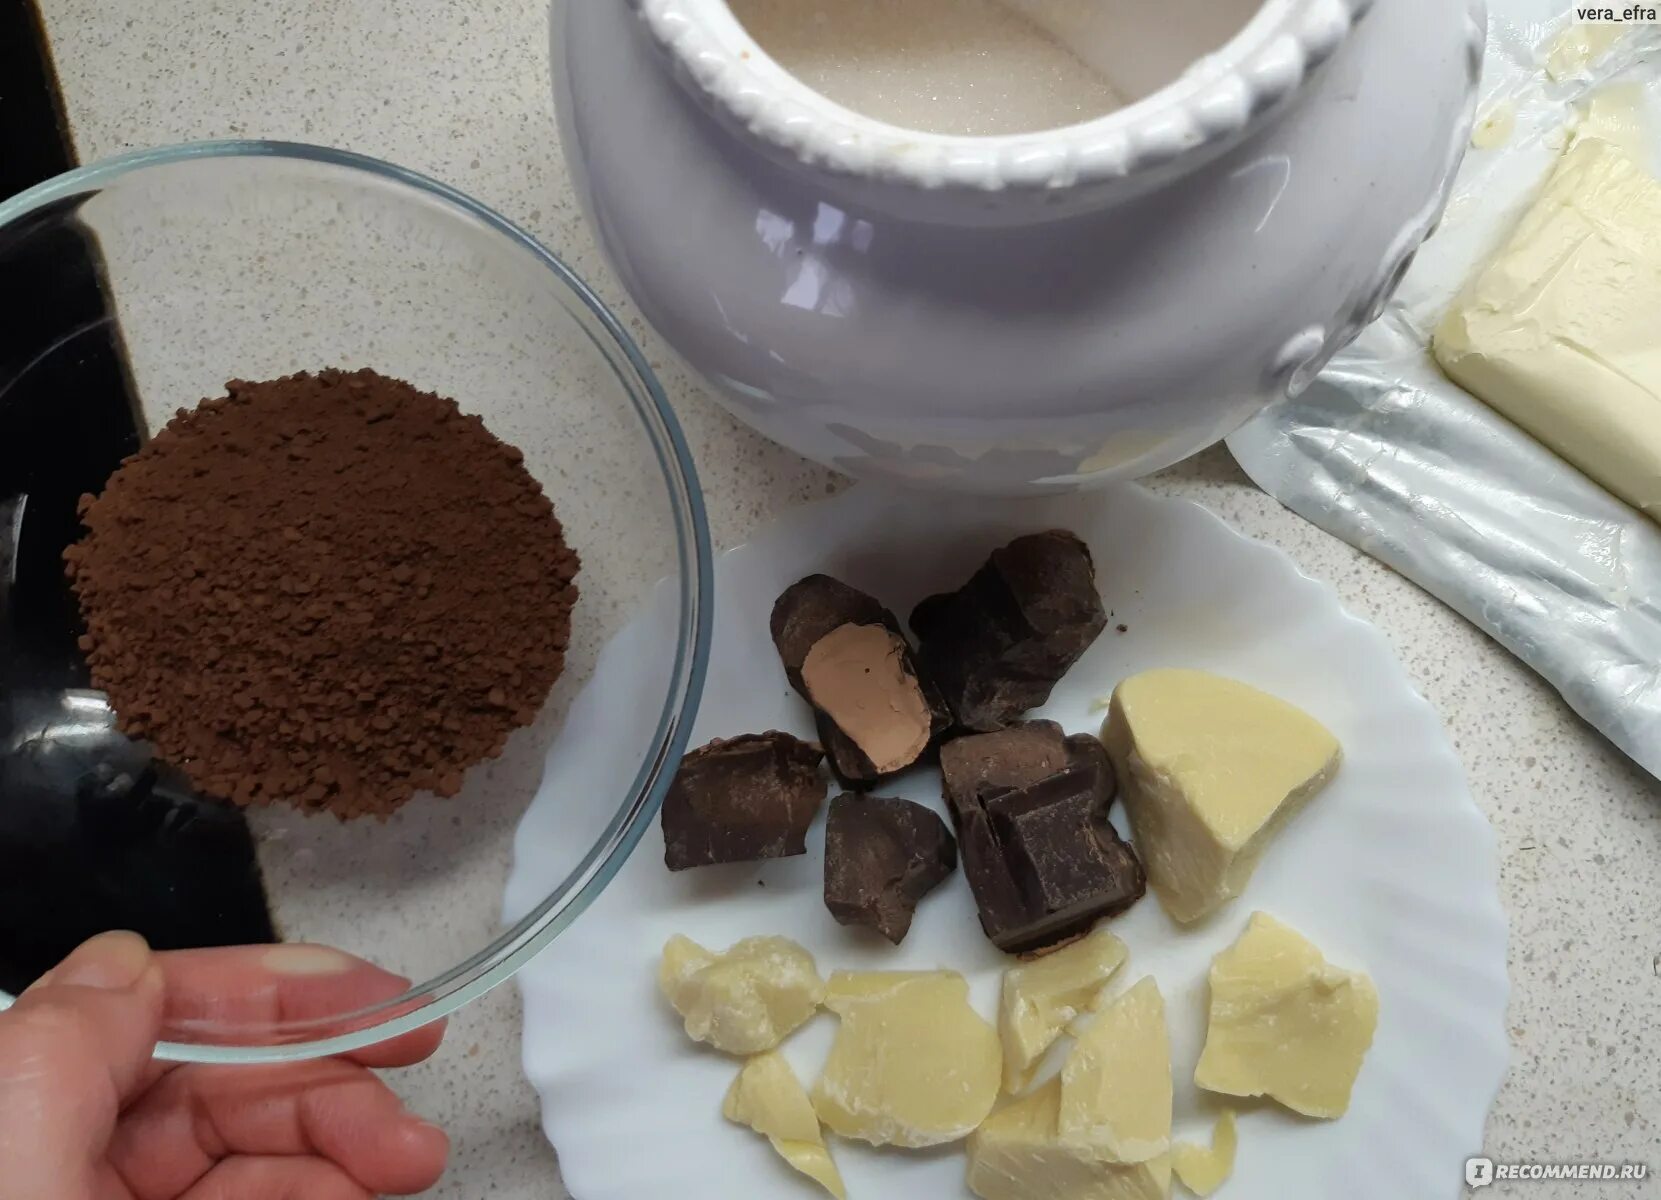 Какао масло и какао тертое рецепт шоколада. Конфеты из какао порошка. Конфеты в какао порошке. Шоколадные конфеты из какао и масла. Конфеты из какао масла.